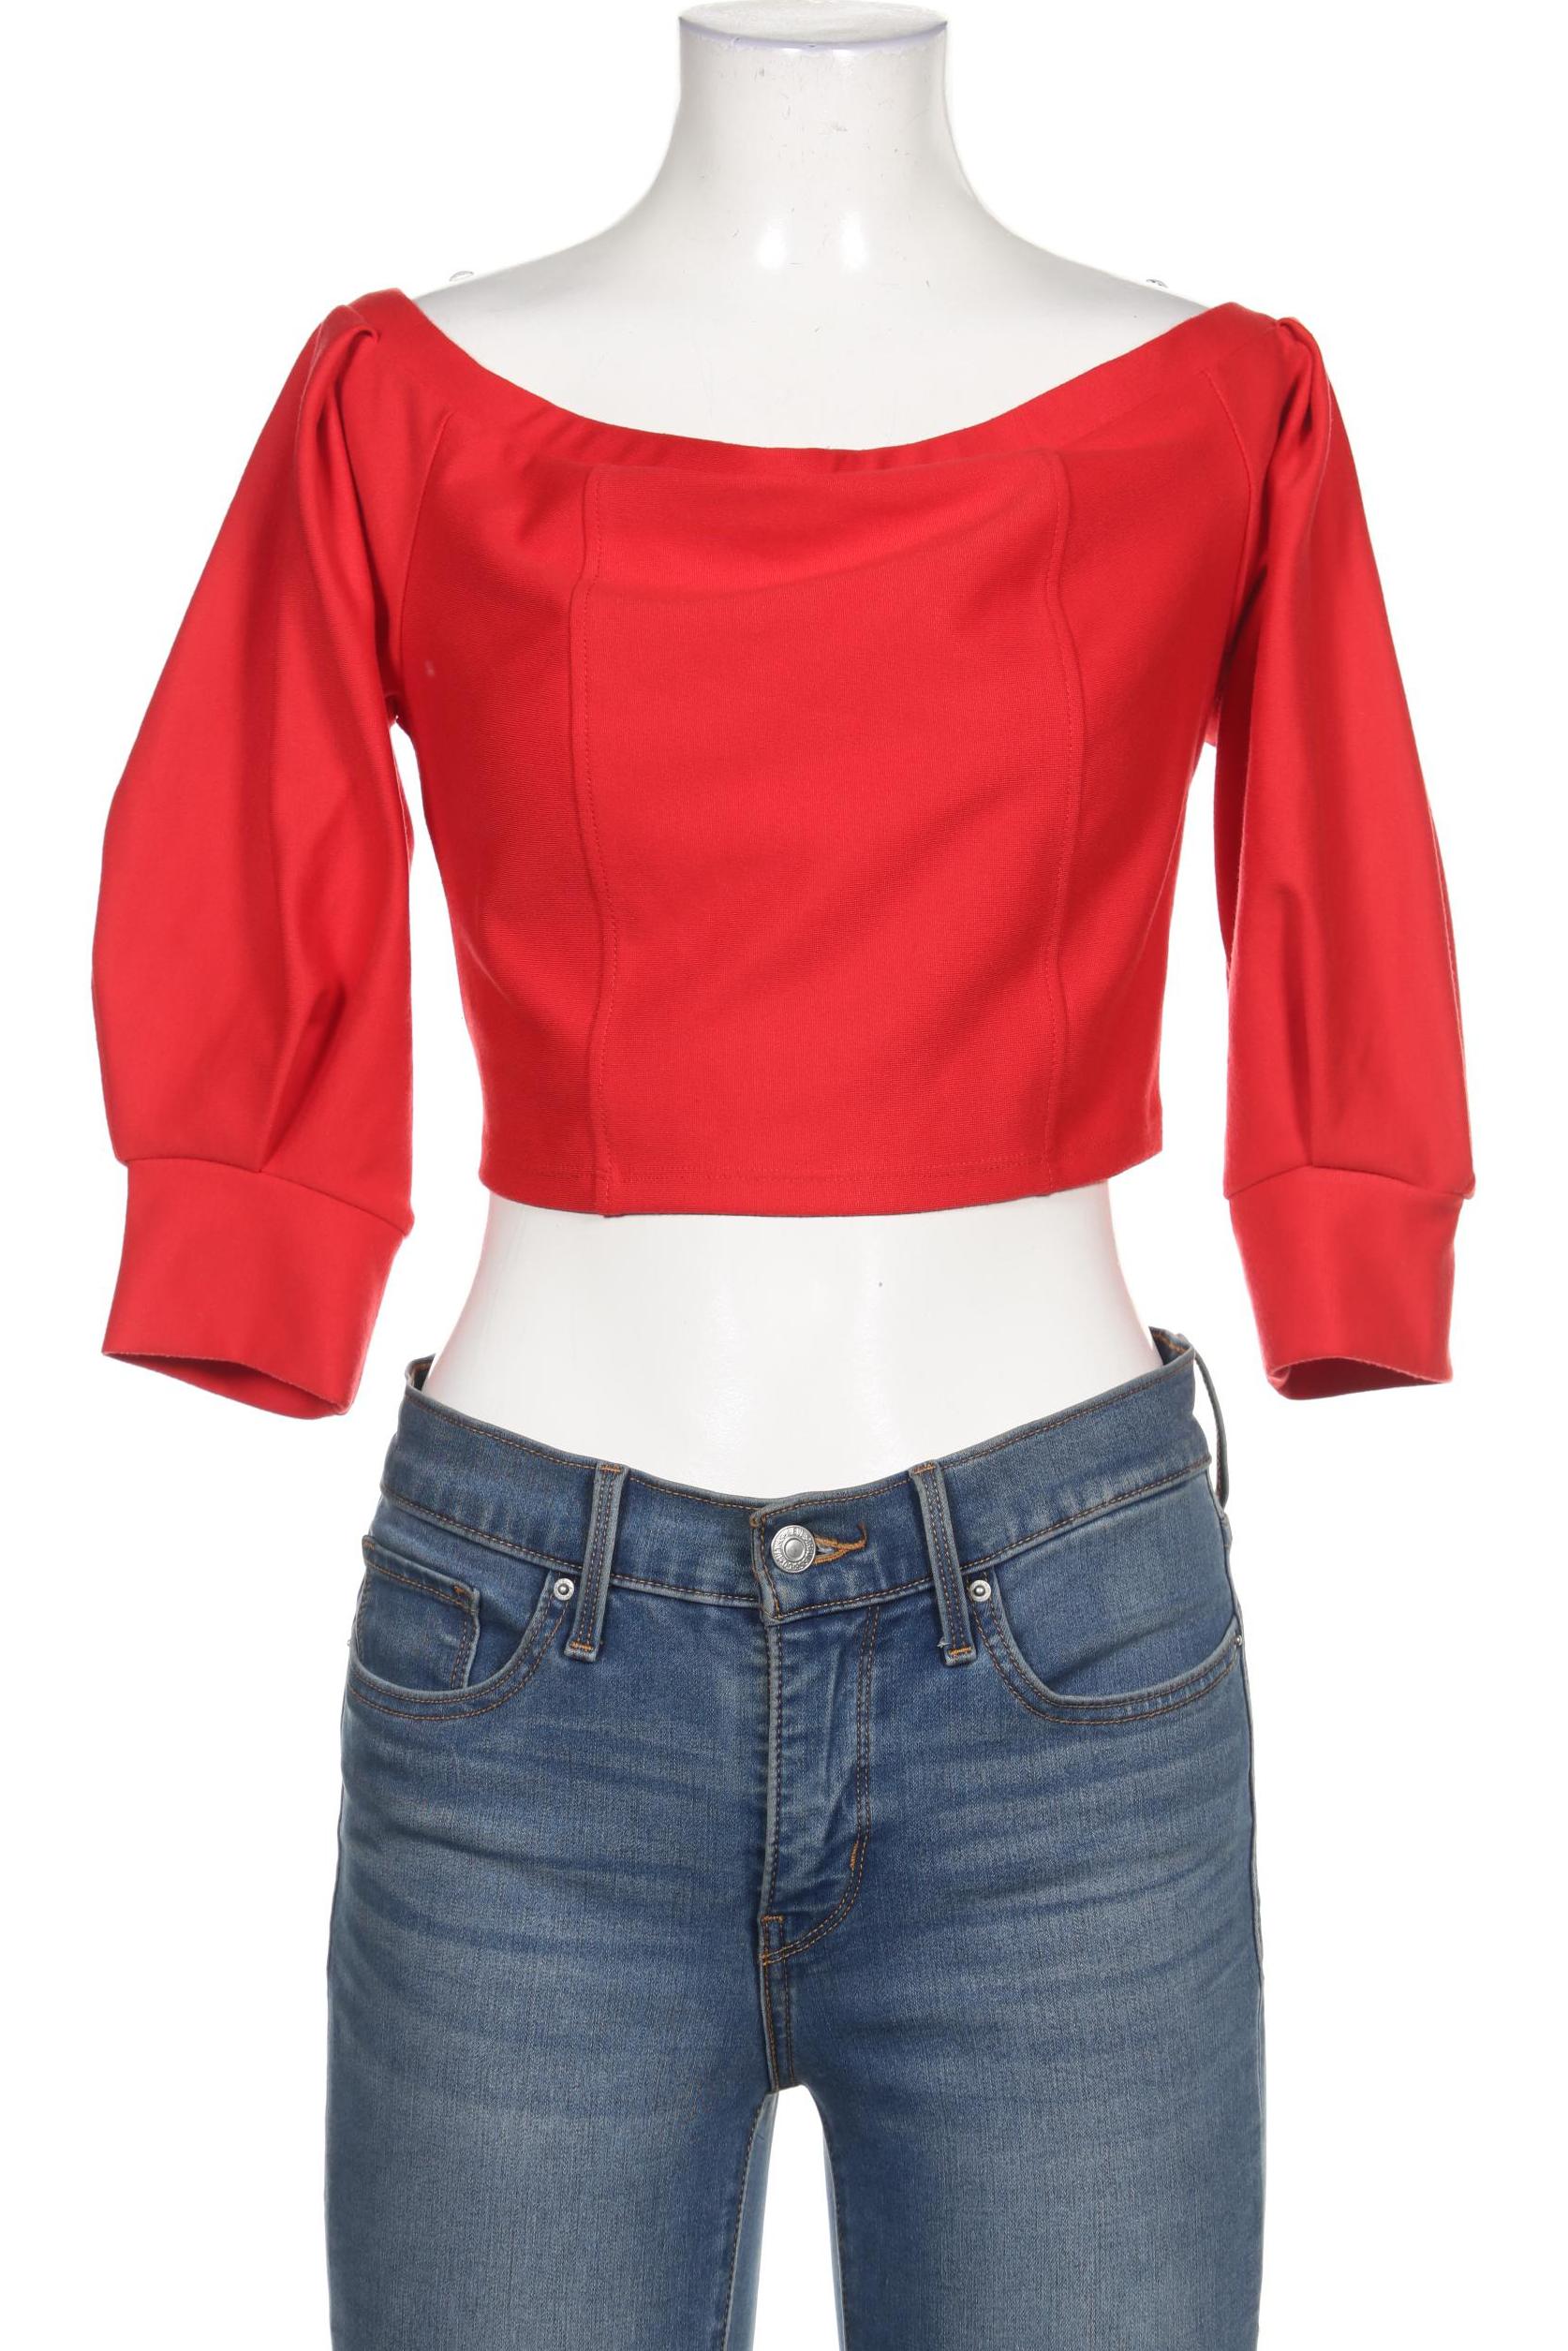 Zara Damen Bluse, rot, Gr. 42 von ZARA